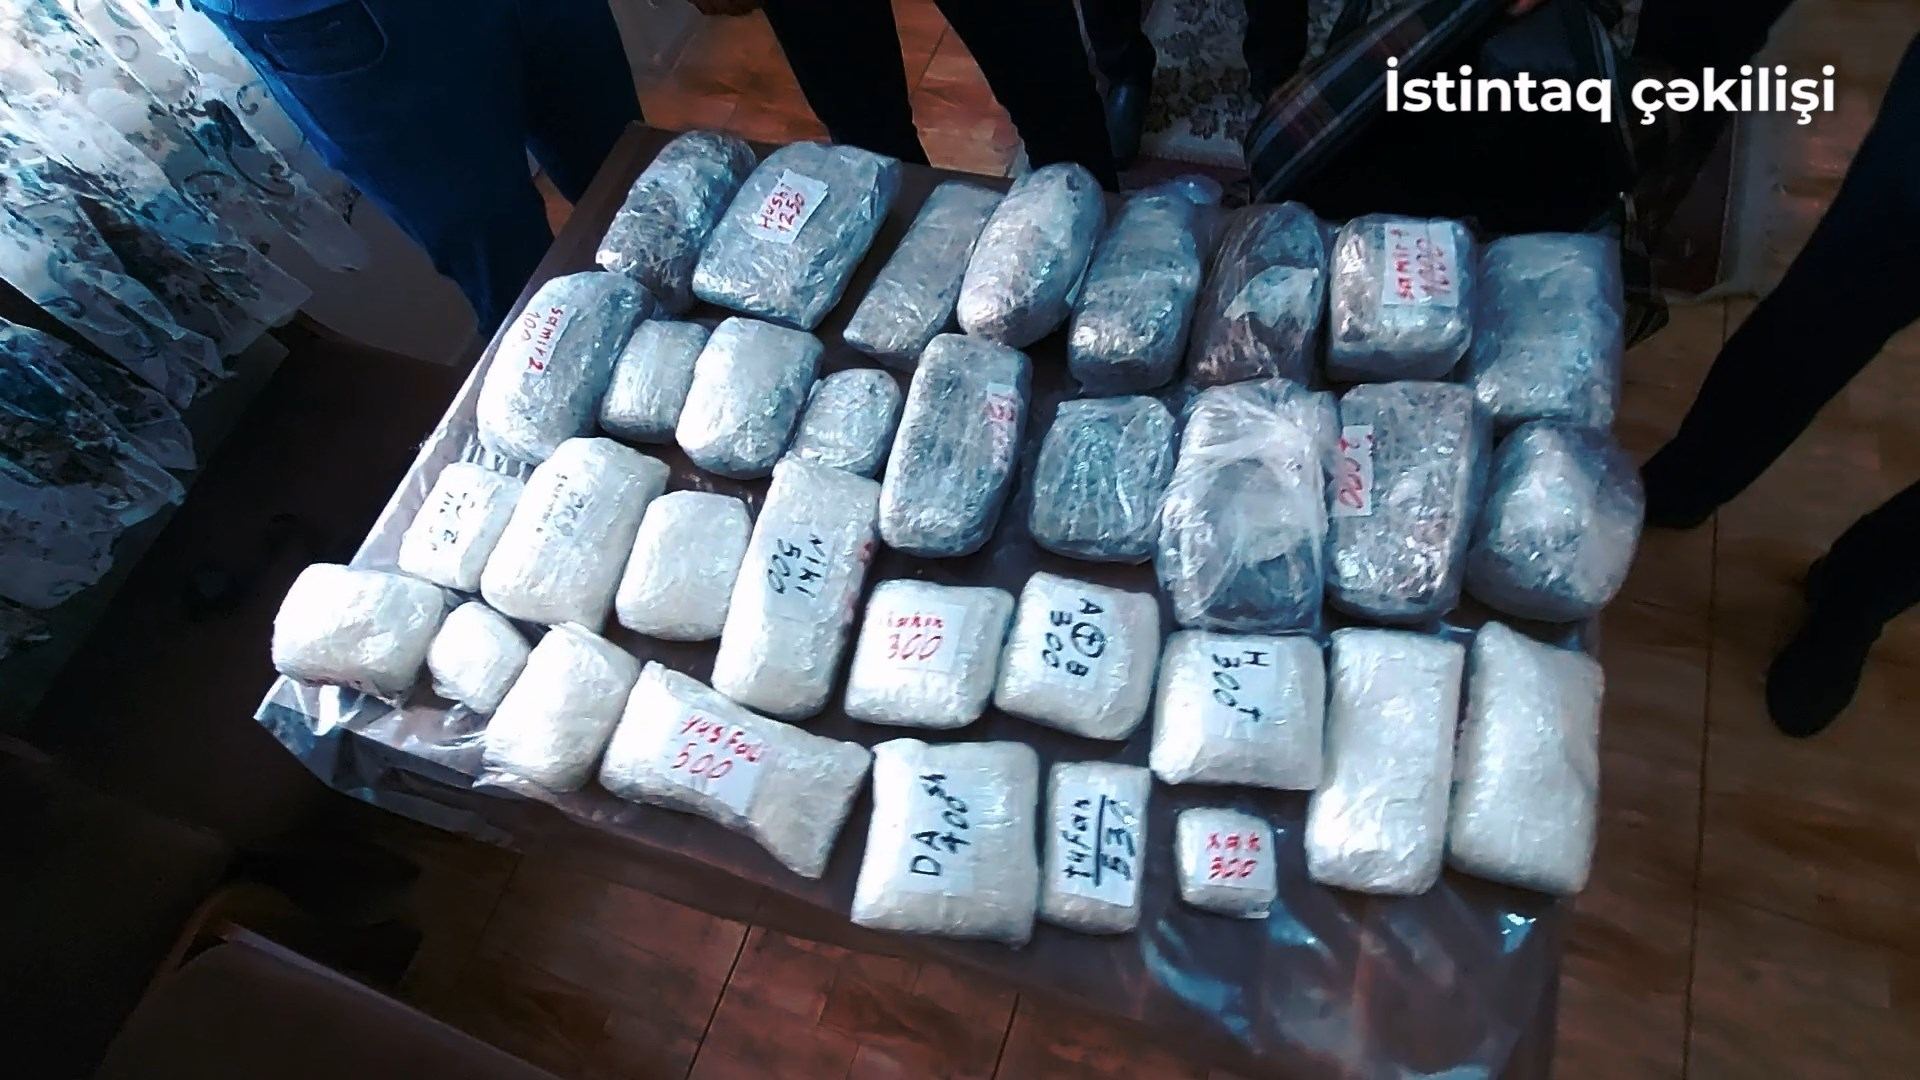 Ölkə ərazisinə 30 kiloqramdan çox narkotik vasitənin gətirilməsinin qarşısı alındı (FOTO/VİDEO) - Gallery Image